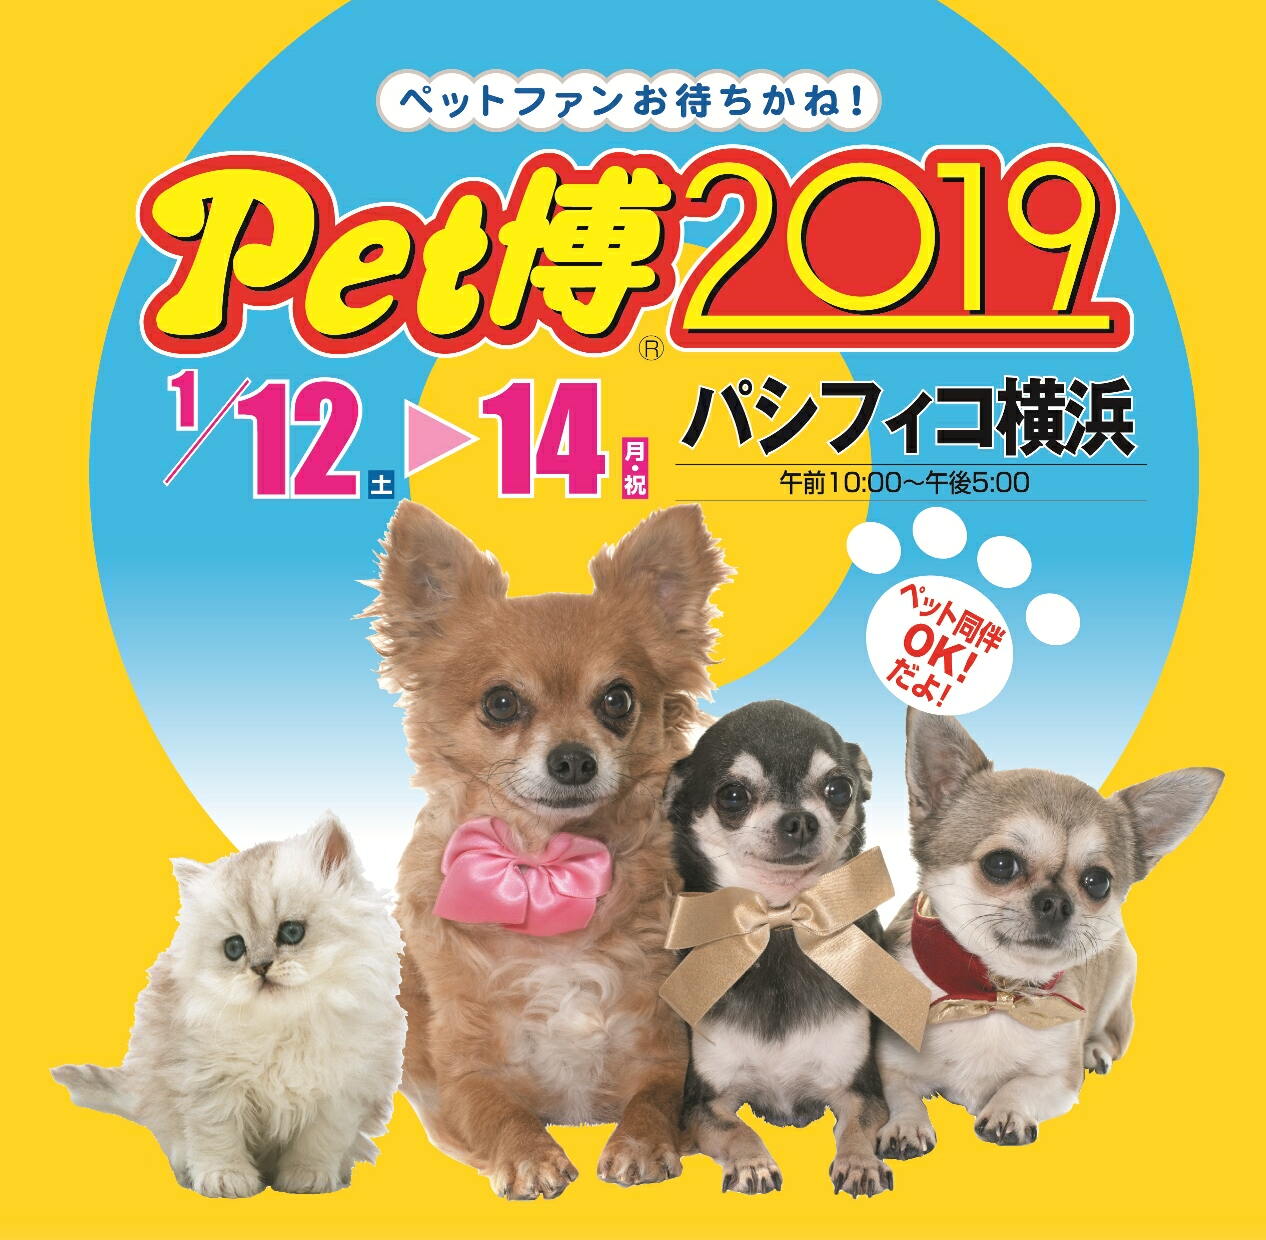 新年最初は「Pet博2019 in 横浜」に行こう！ペット同伴可の大人気イベント1月12日から開催